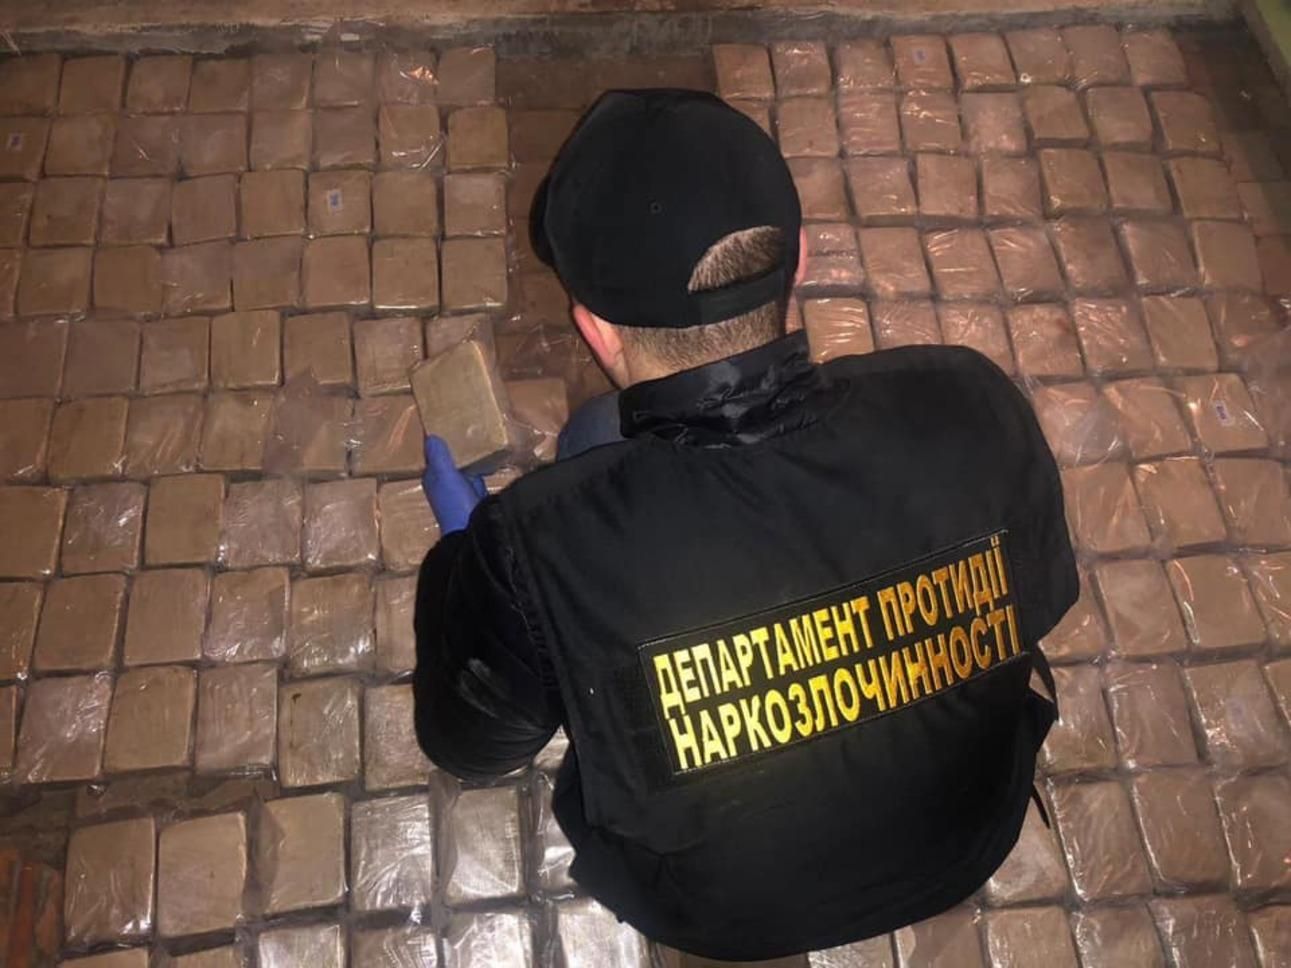 Хотели вывезти 300 килограммов героина: в Киеве задержали иностранных наркоторговцев